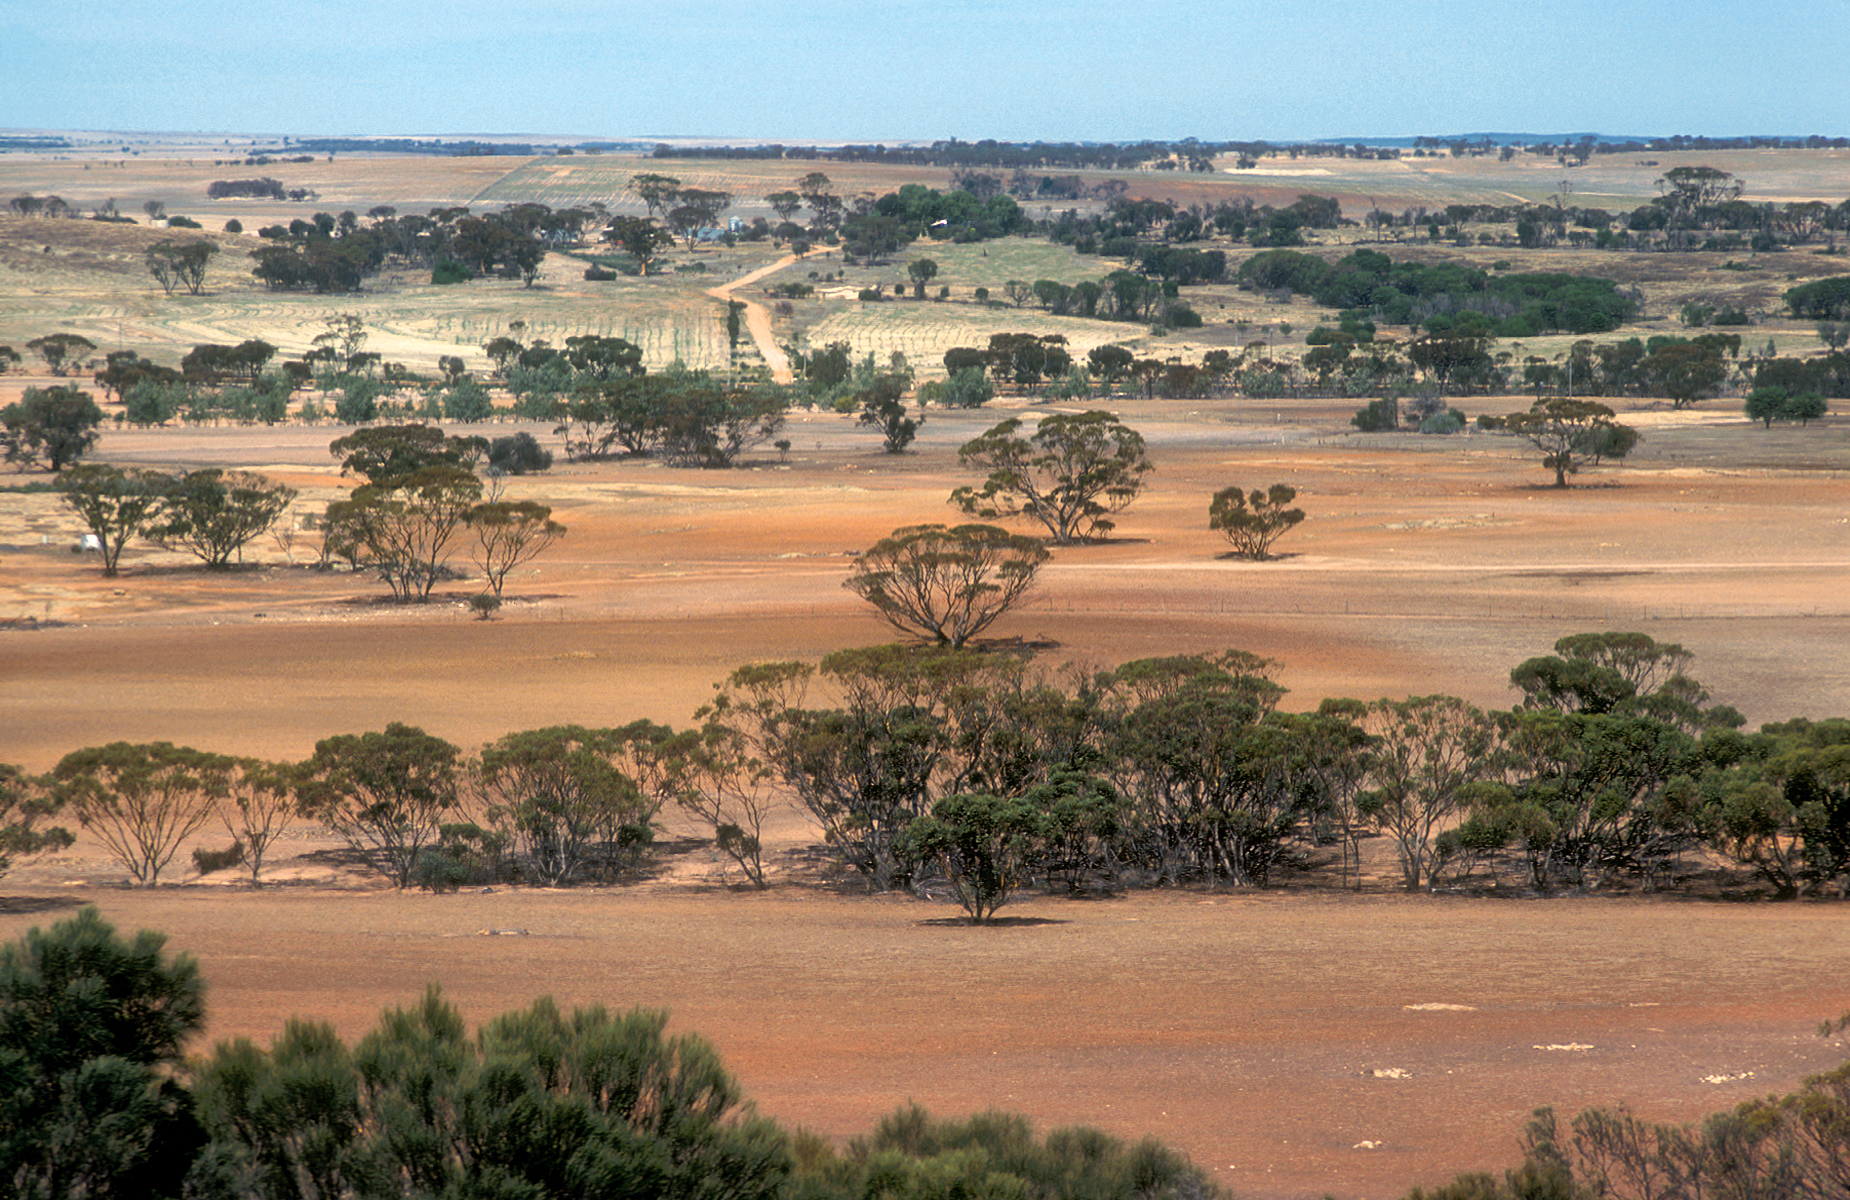 Landscape view of farmland near Bruce Rock in the Western Australian wheat belt. 1981. (Source: Willem van Aken)